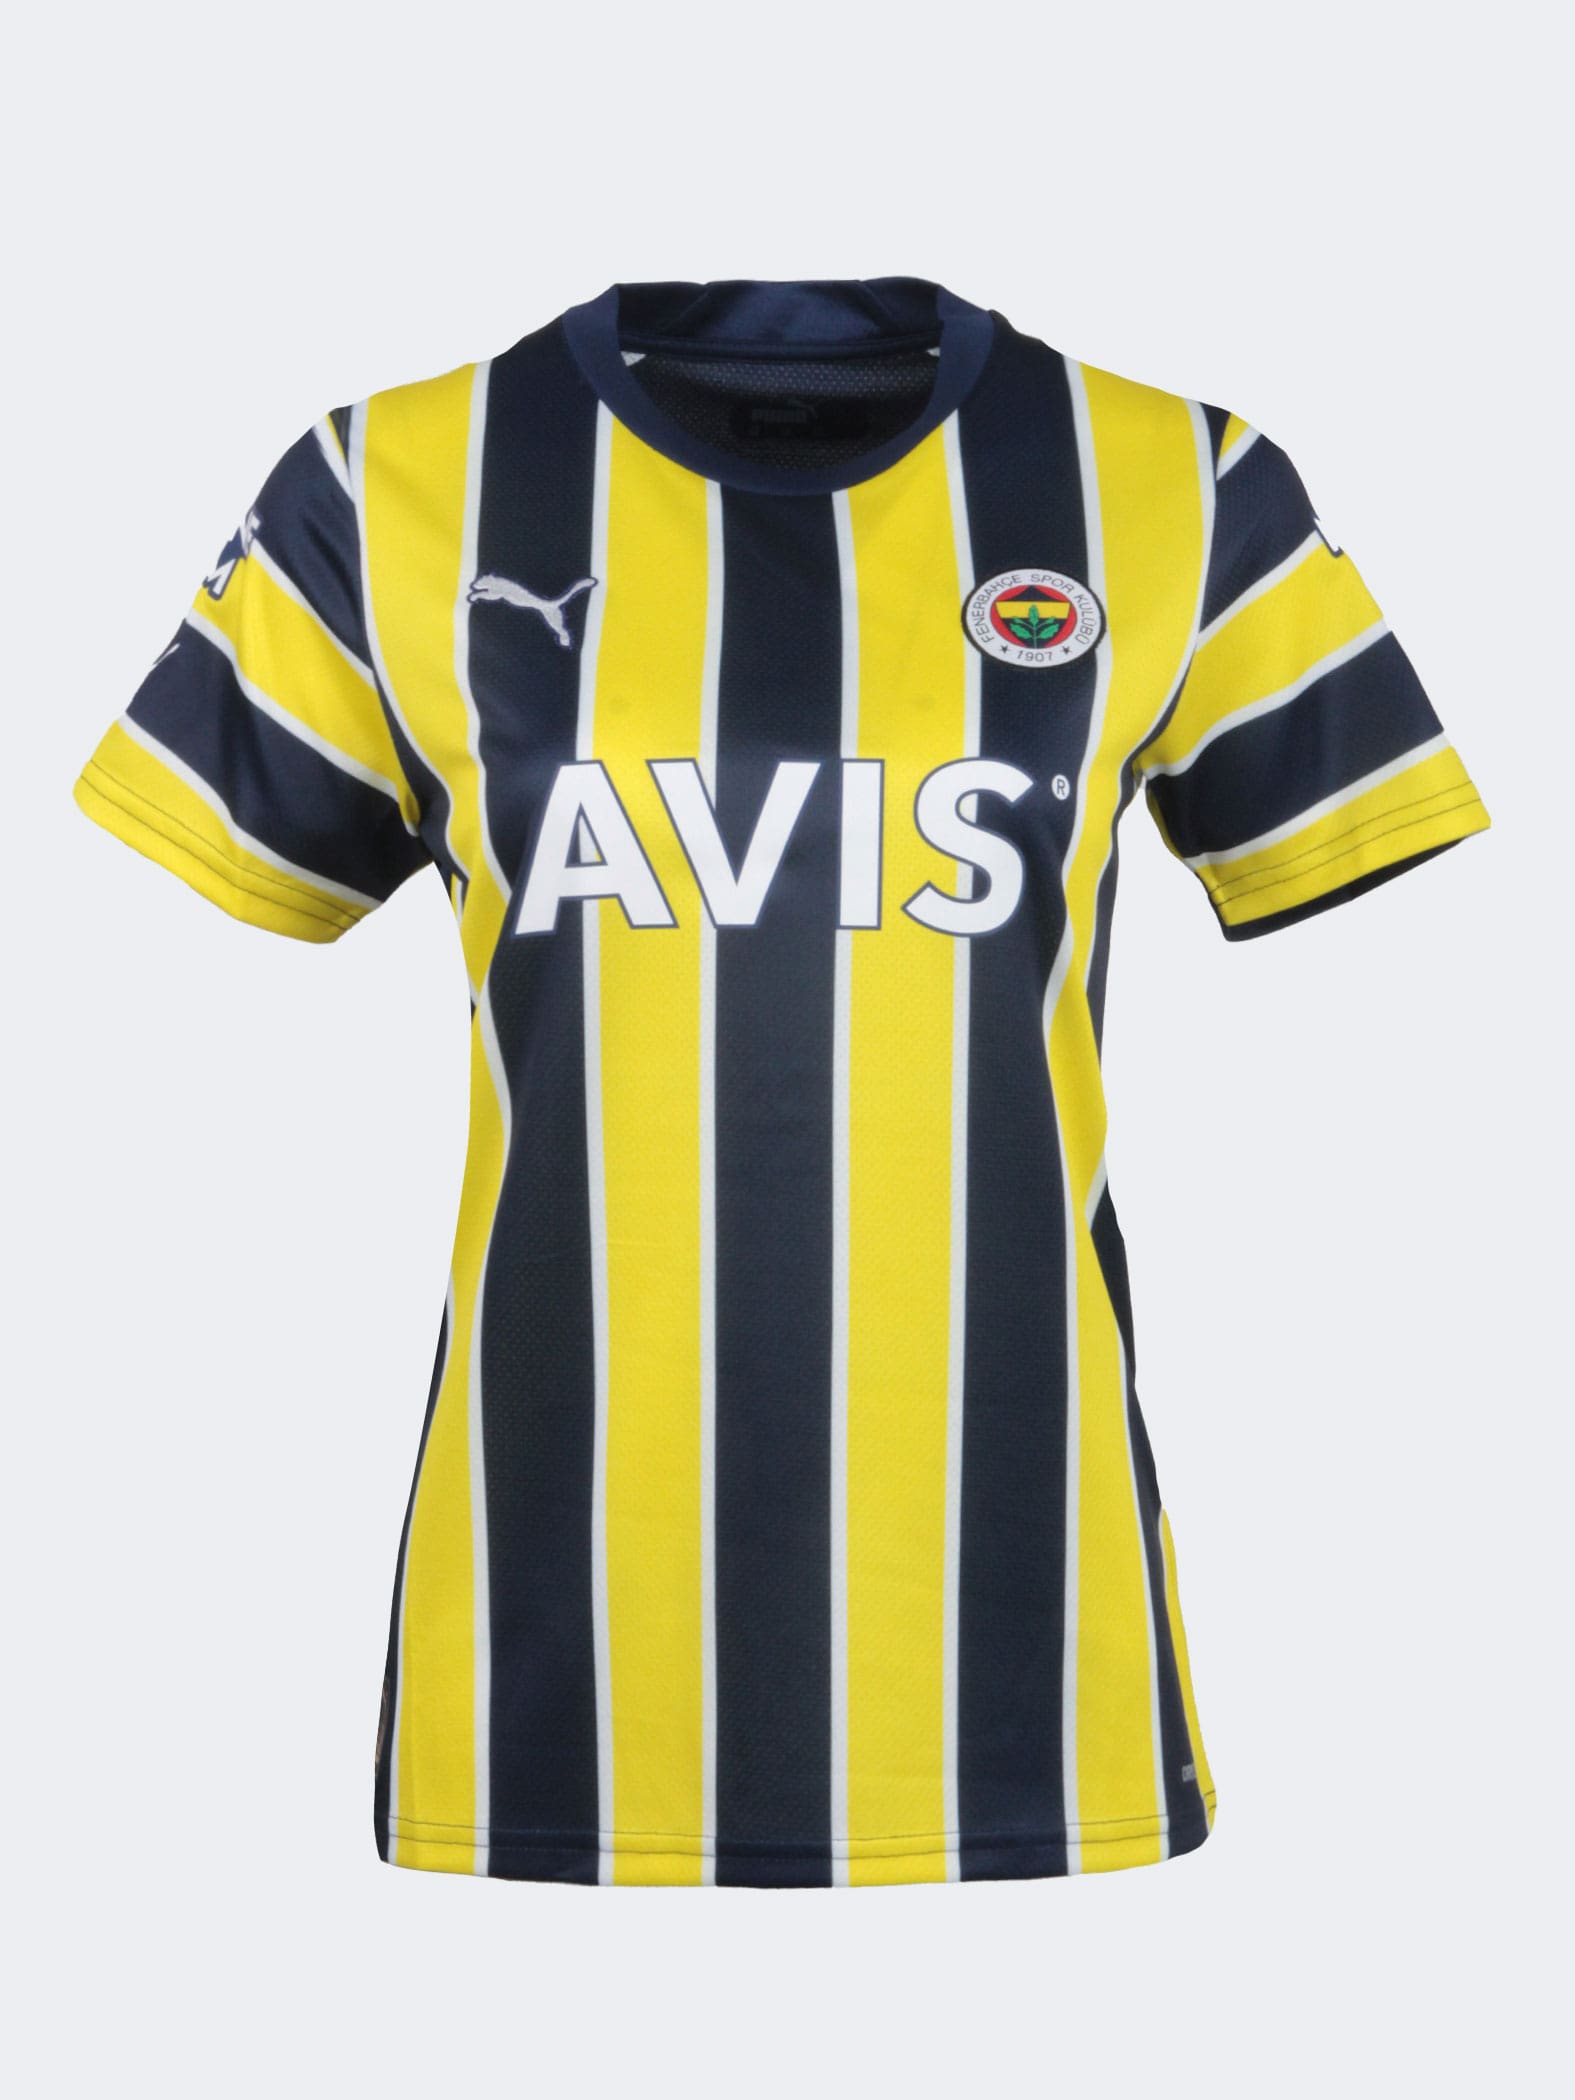 Fenerbahçe Erkek T-Shirt Modelleri, Fiyatları - Trendyol